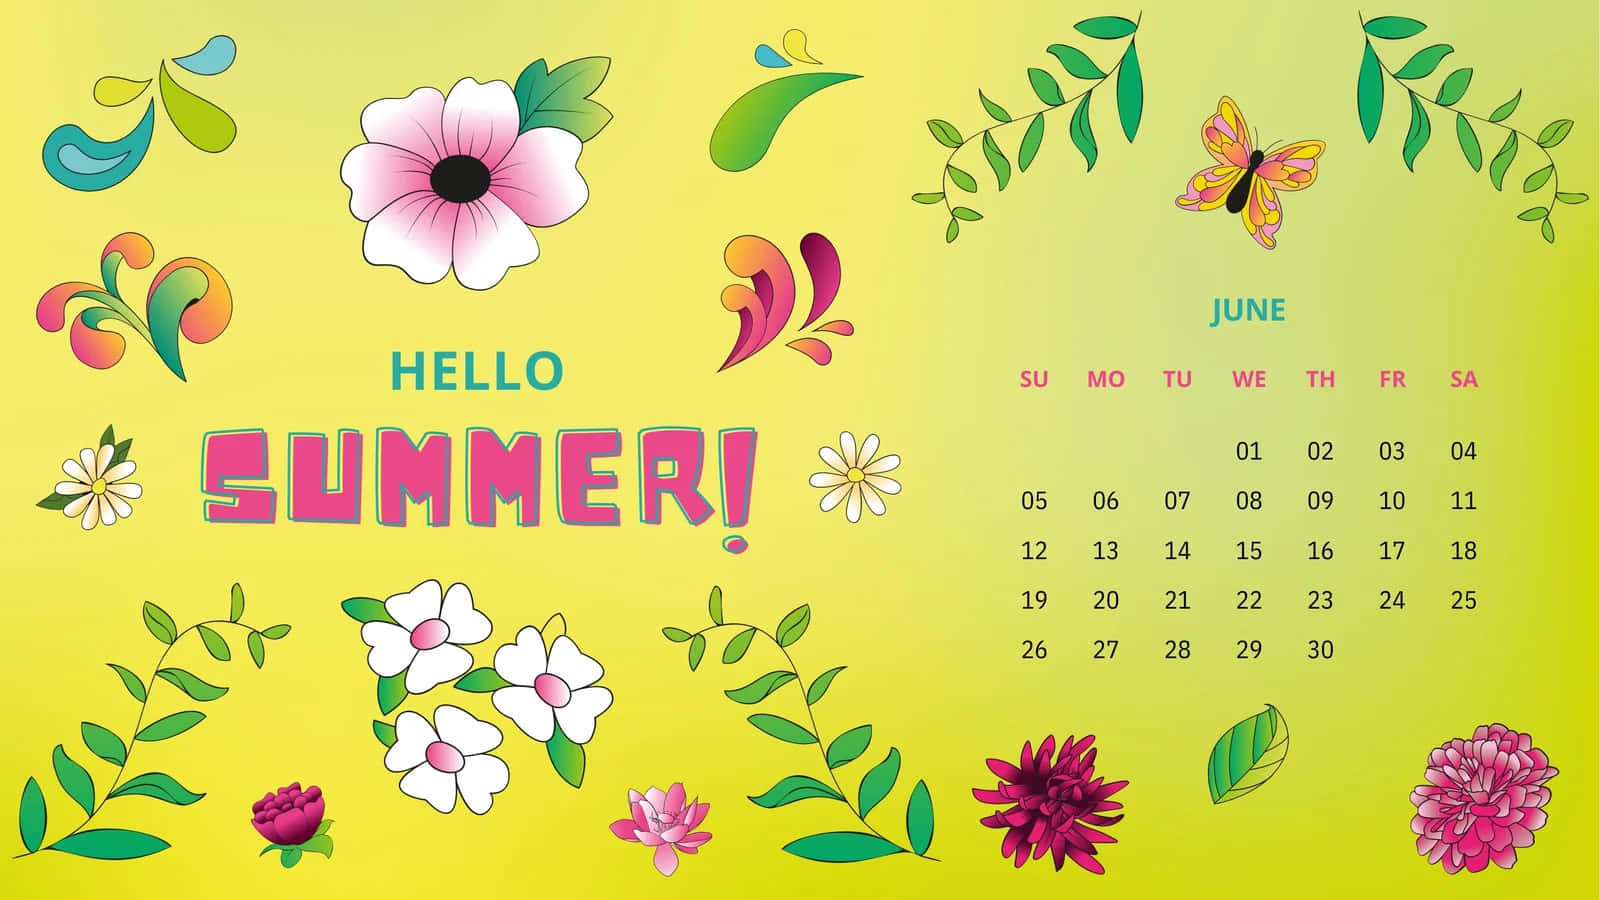 Hello Summer June Calendar Desktop Background Wallpaper